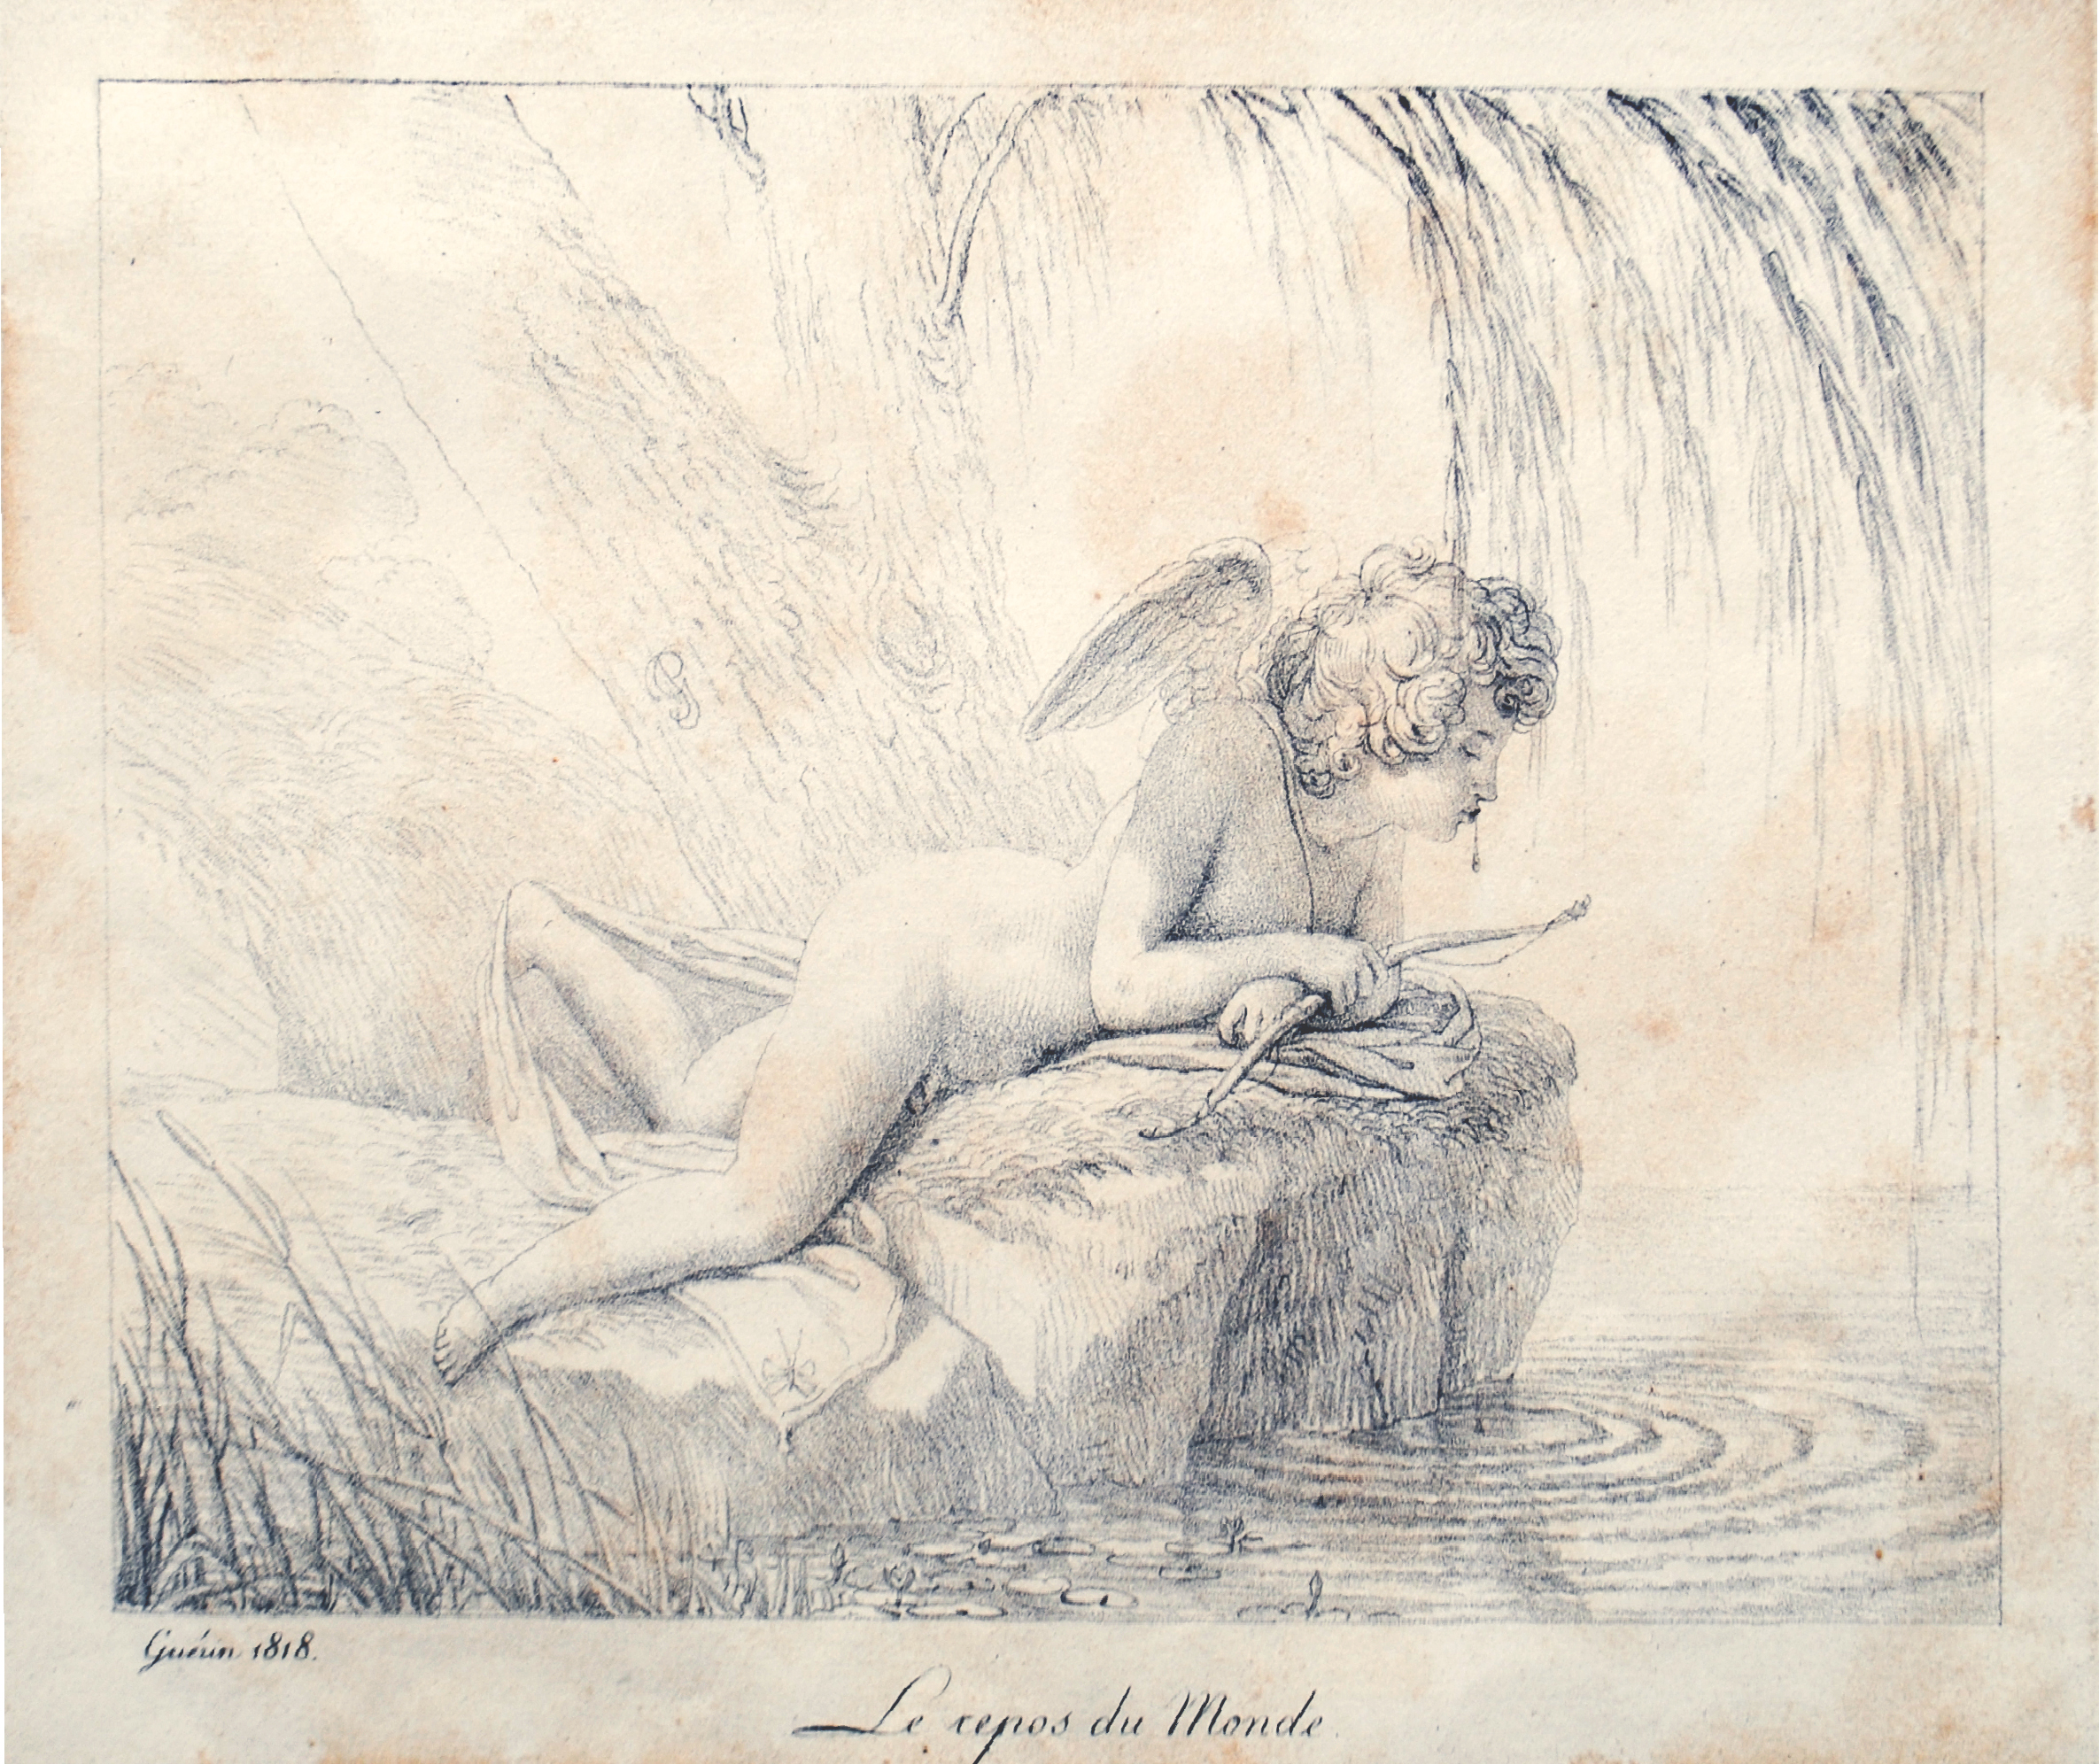 Pierre-Narcisse Guérin, Le Repos du Monde, chalk lithograph, 1816